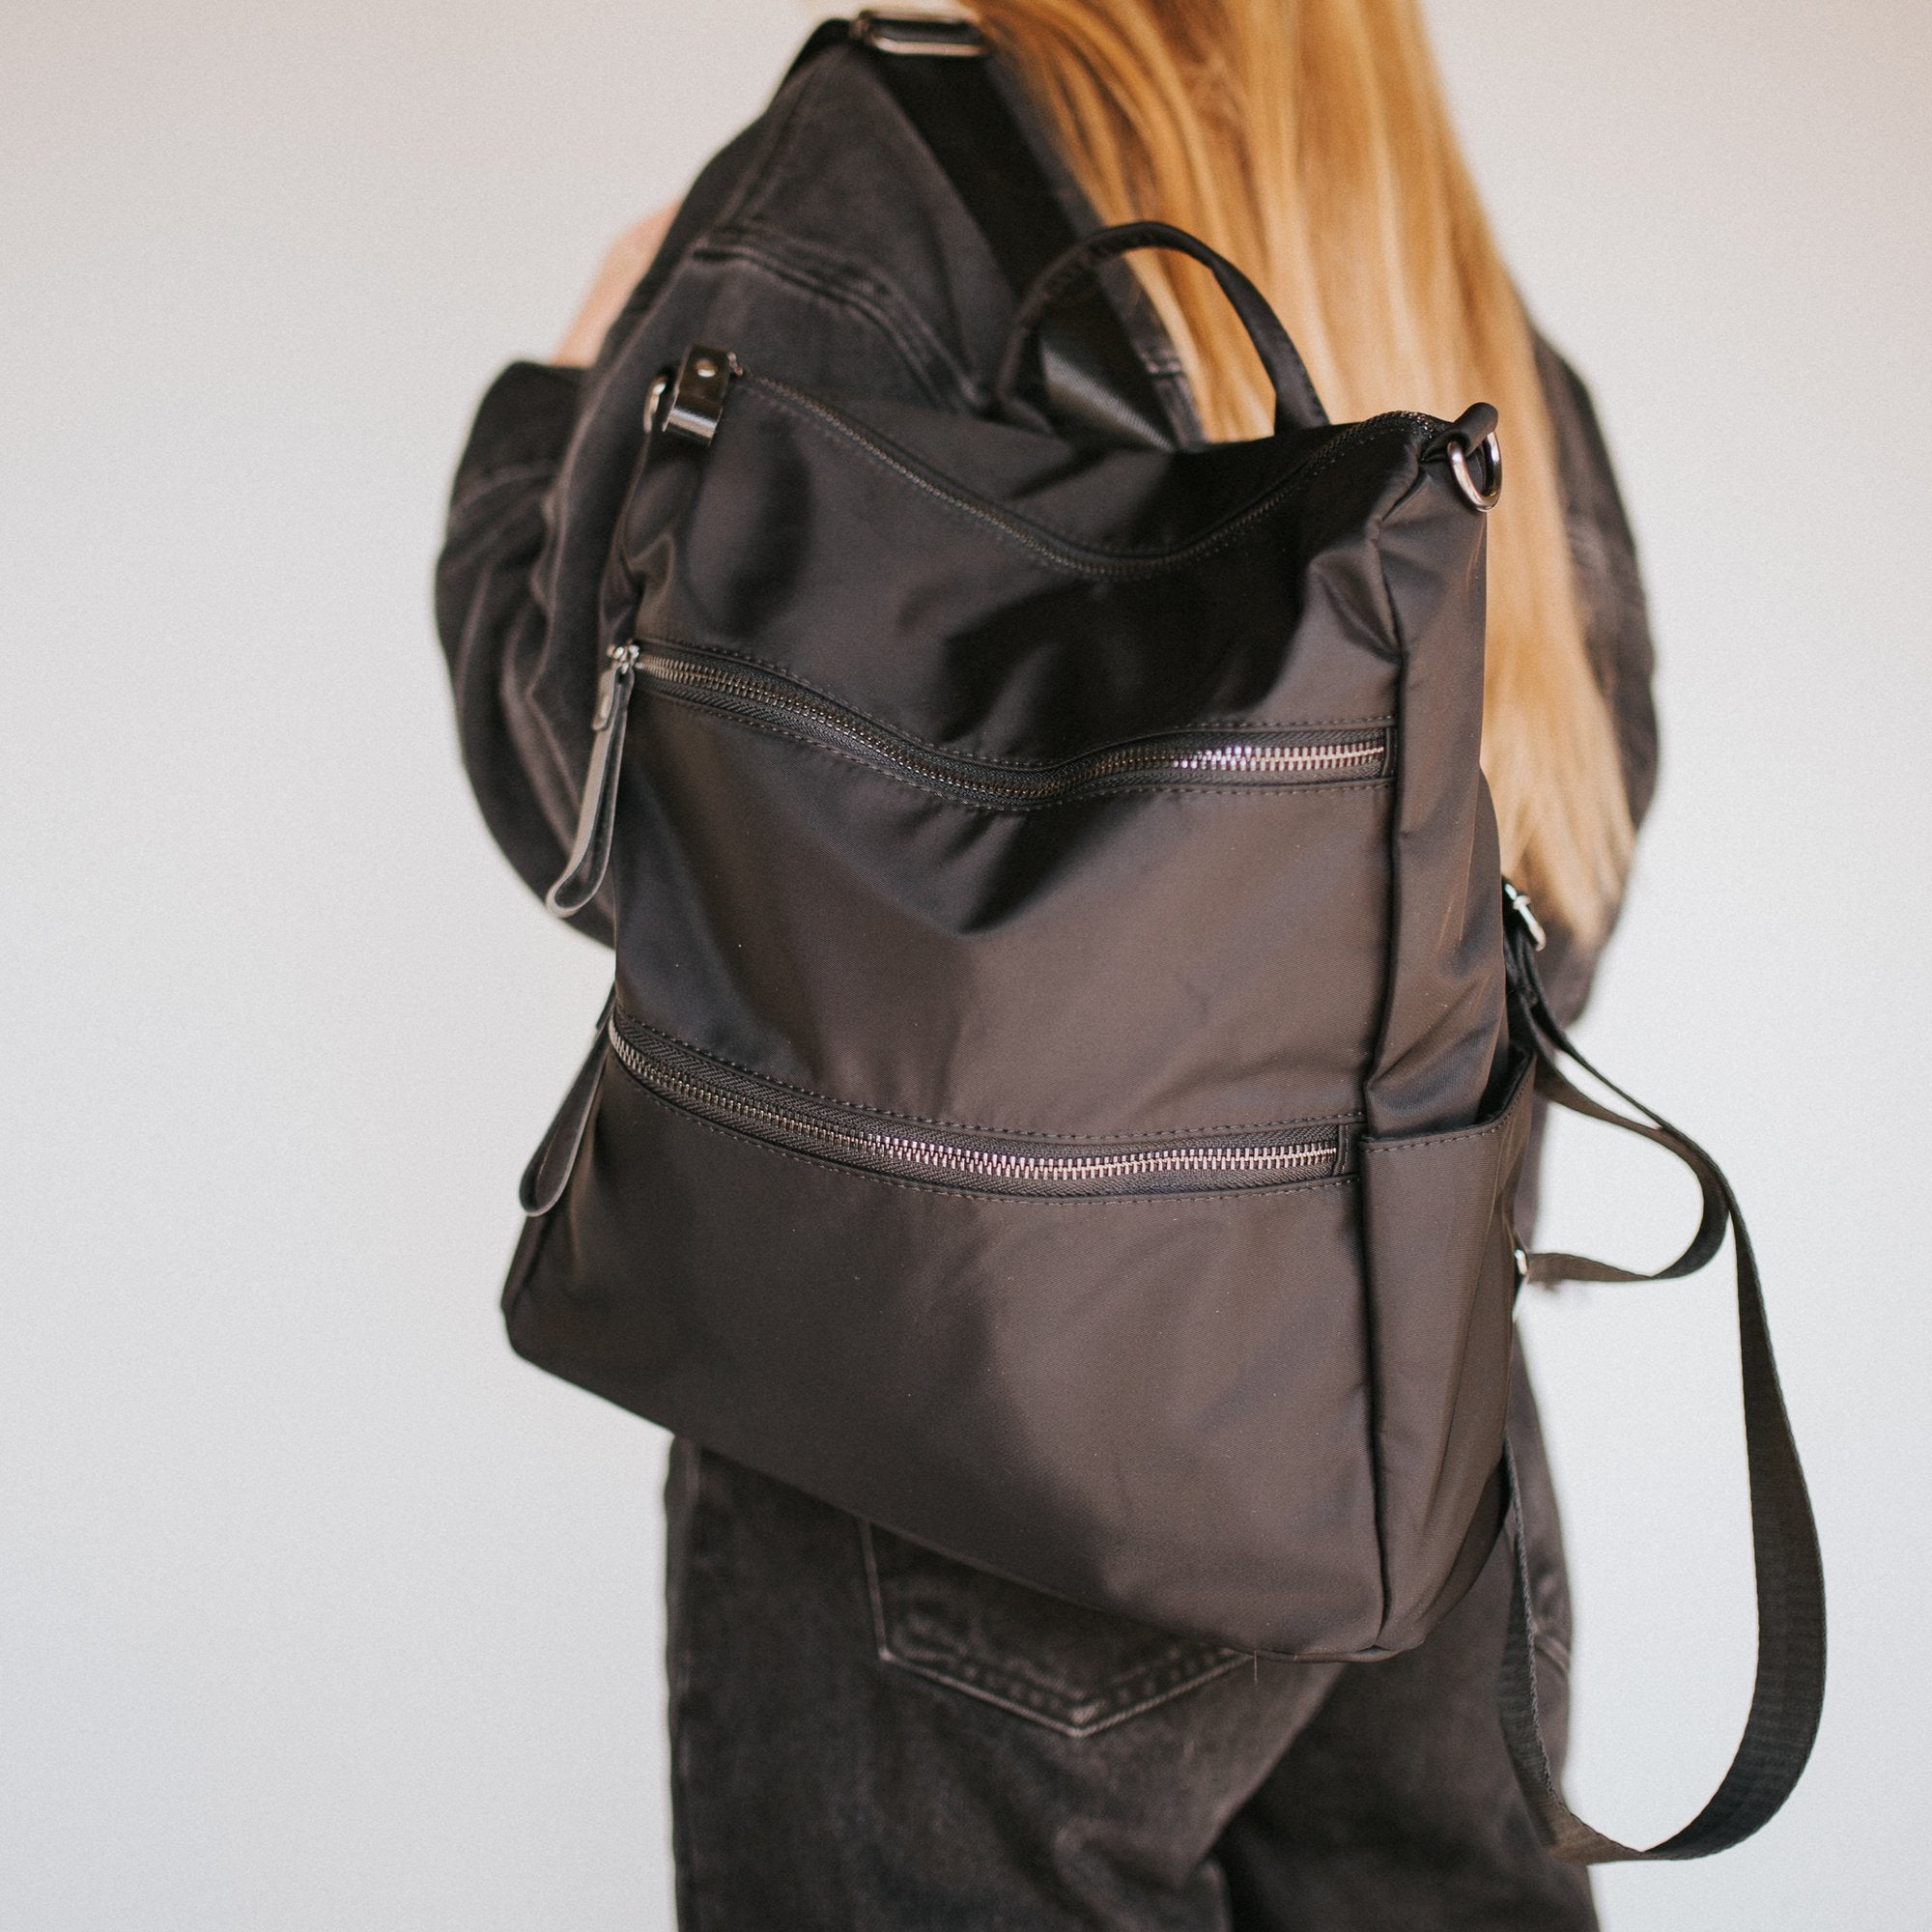 Nori Backpack - Black